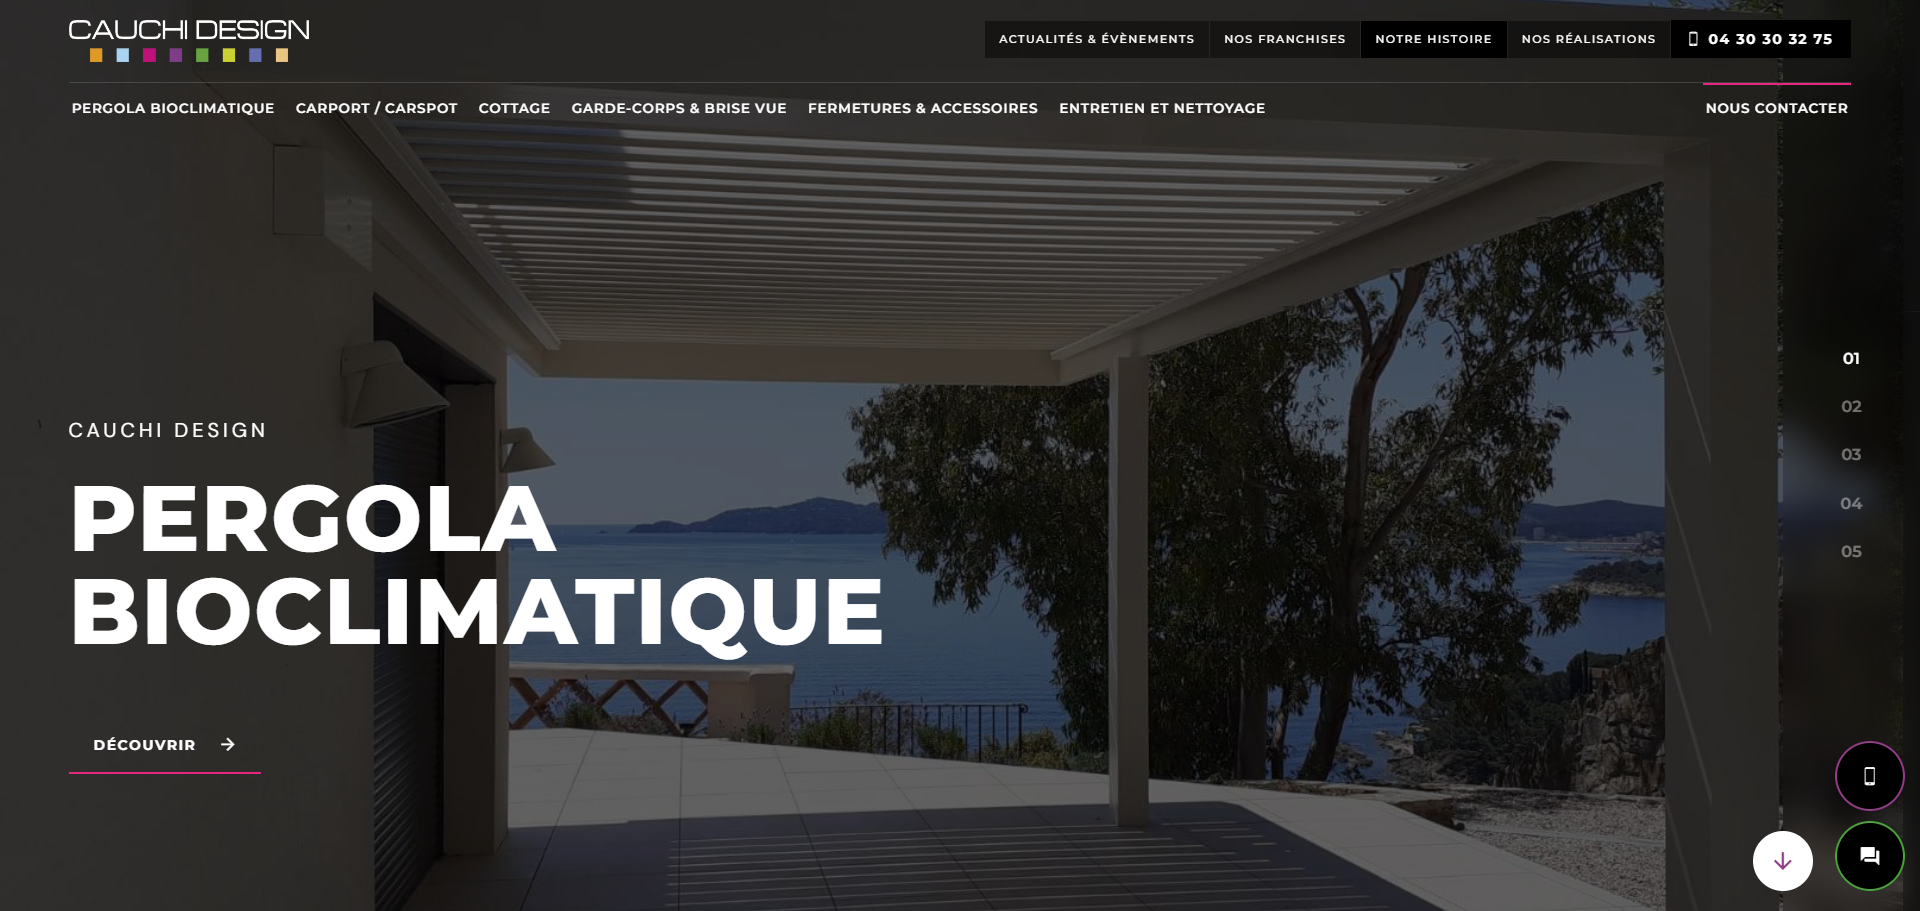 Création d'un site internet pour Cauchy Design, le spécialiste de la pergo bioclimation à La Garde près de Toulon